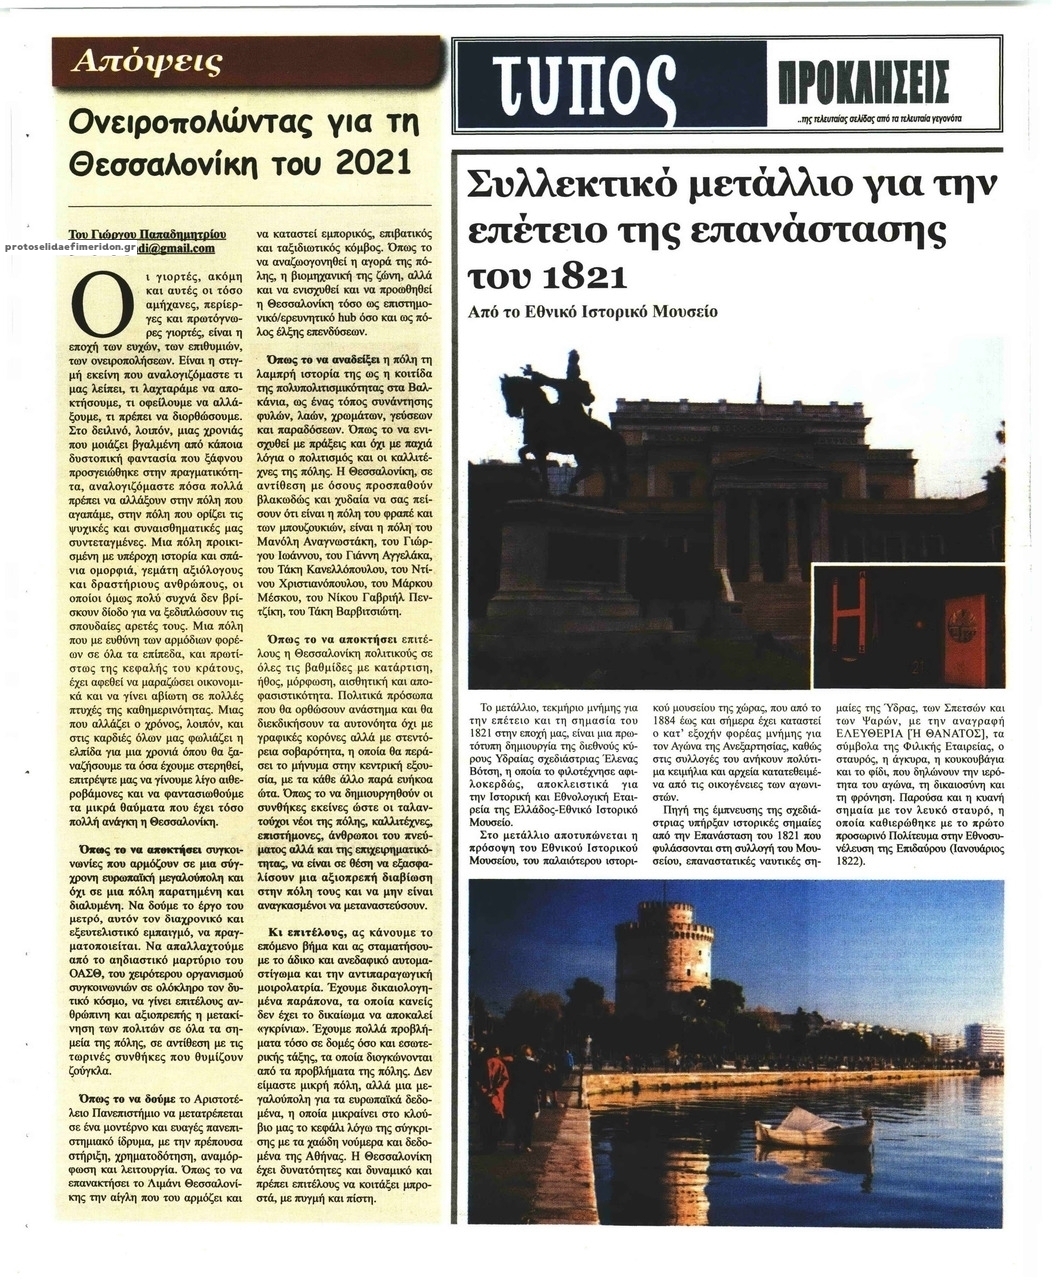 Οπισθόφυλλο εφημερίδας Τύπος Θεσσαλονίκης